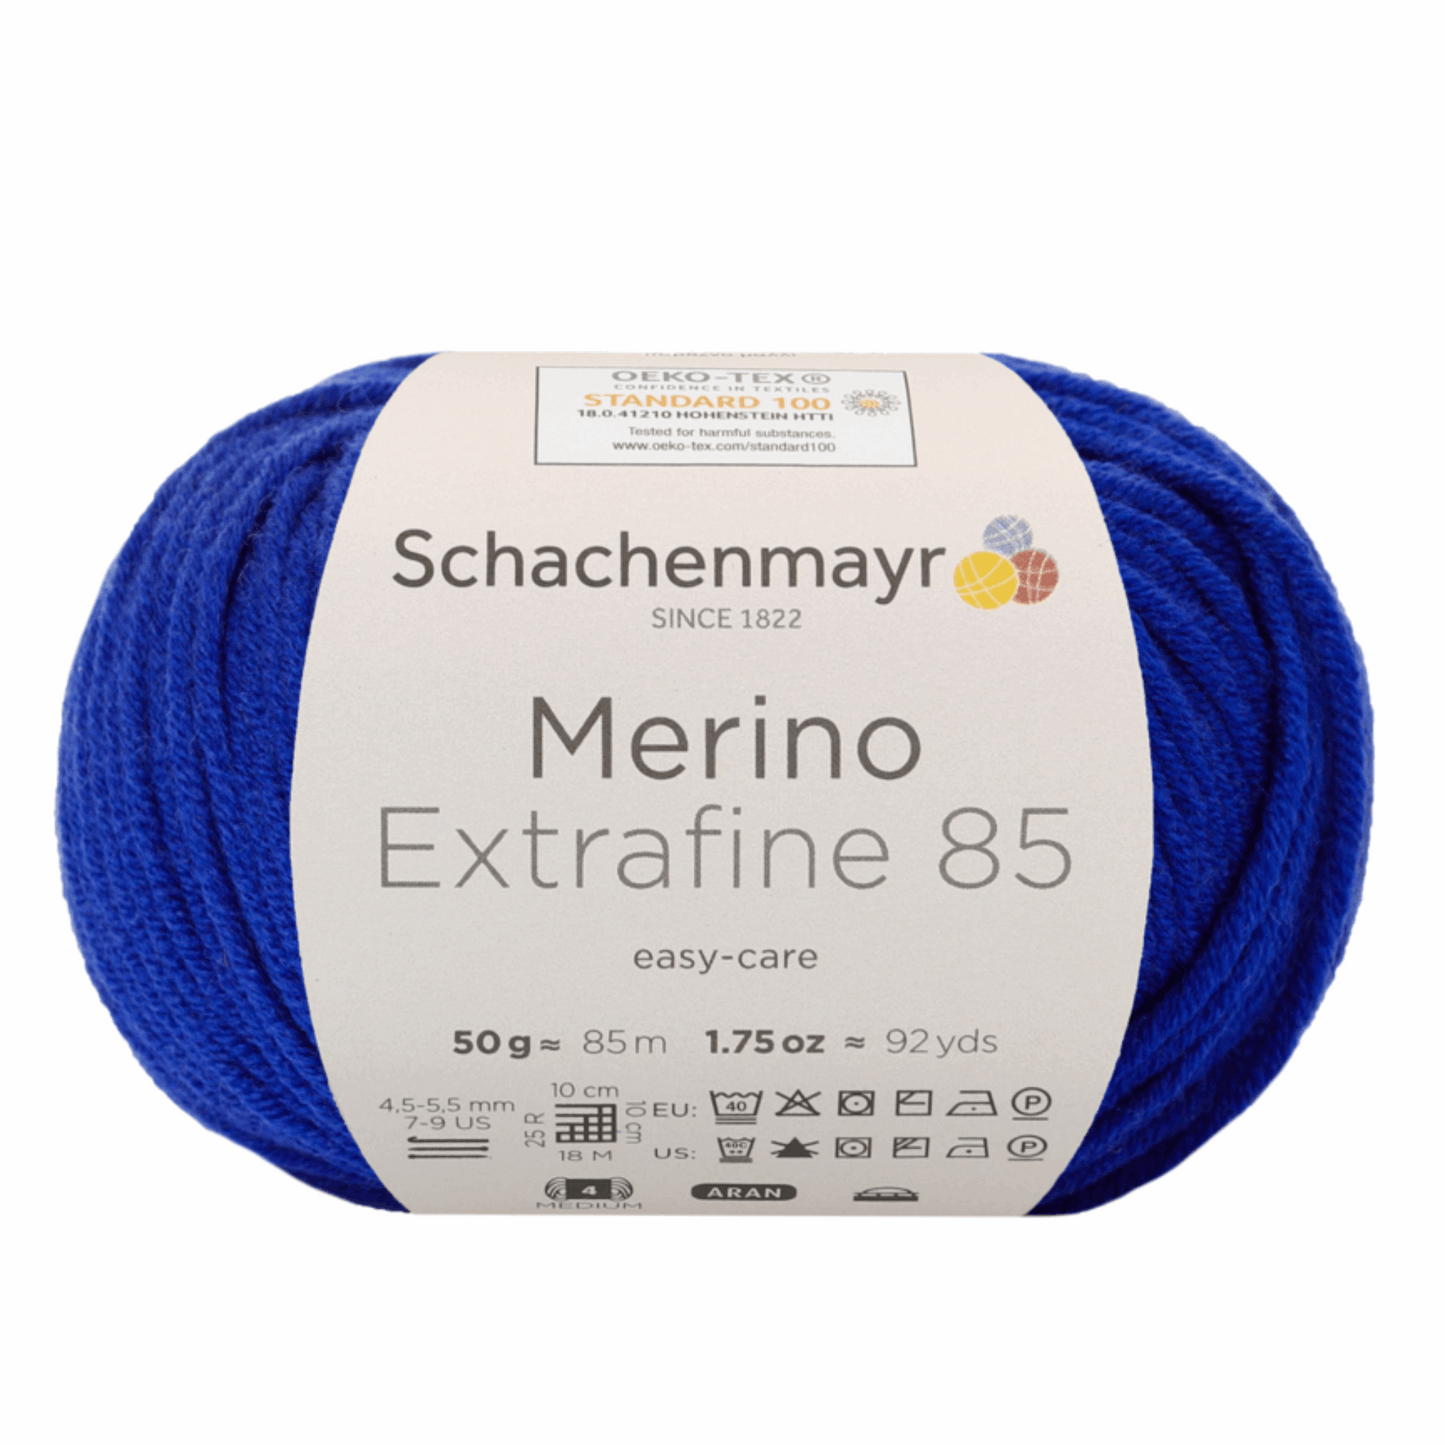 Schachenmayr Merino extrafine 85 50G, 90554, Farbe enzian 253